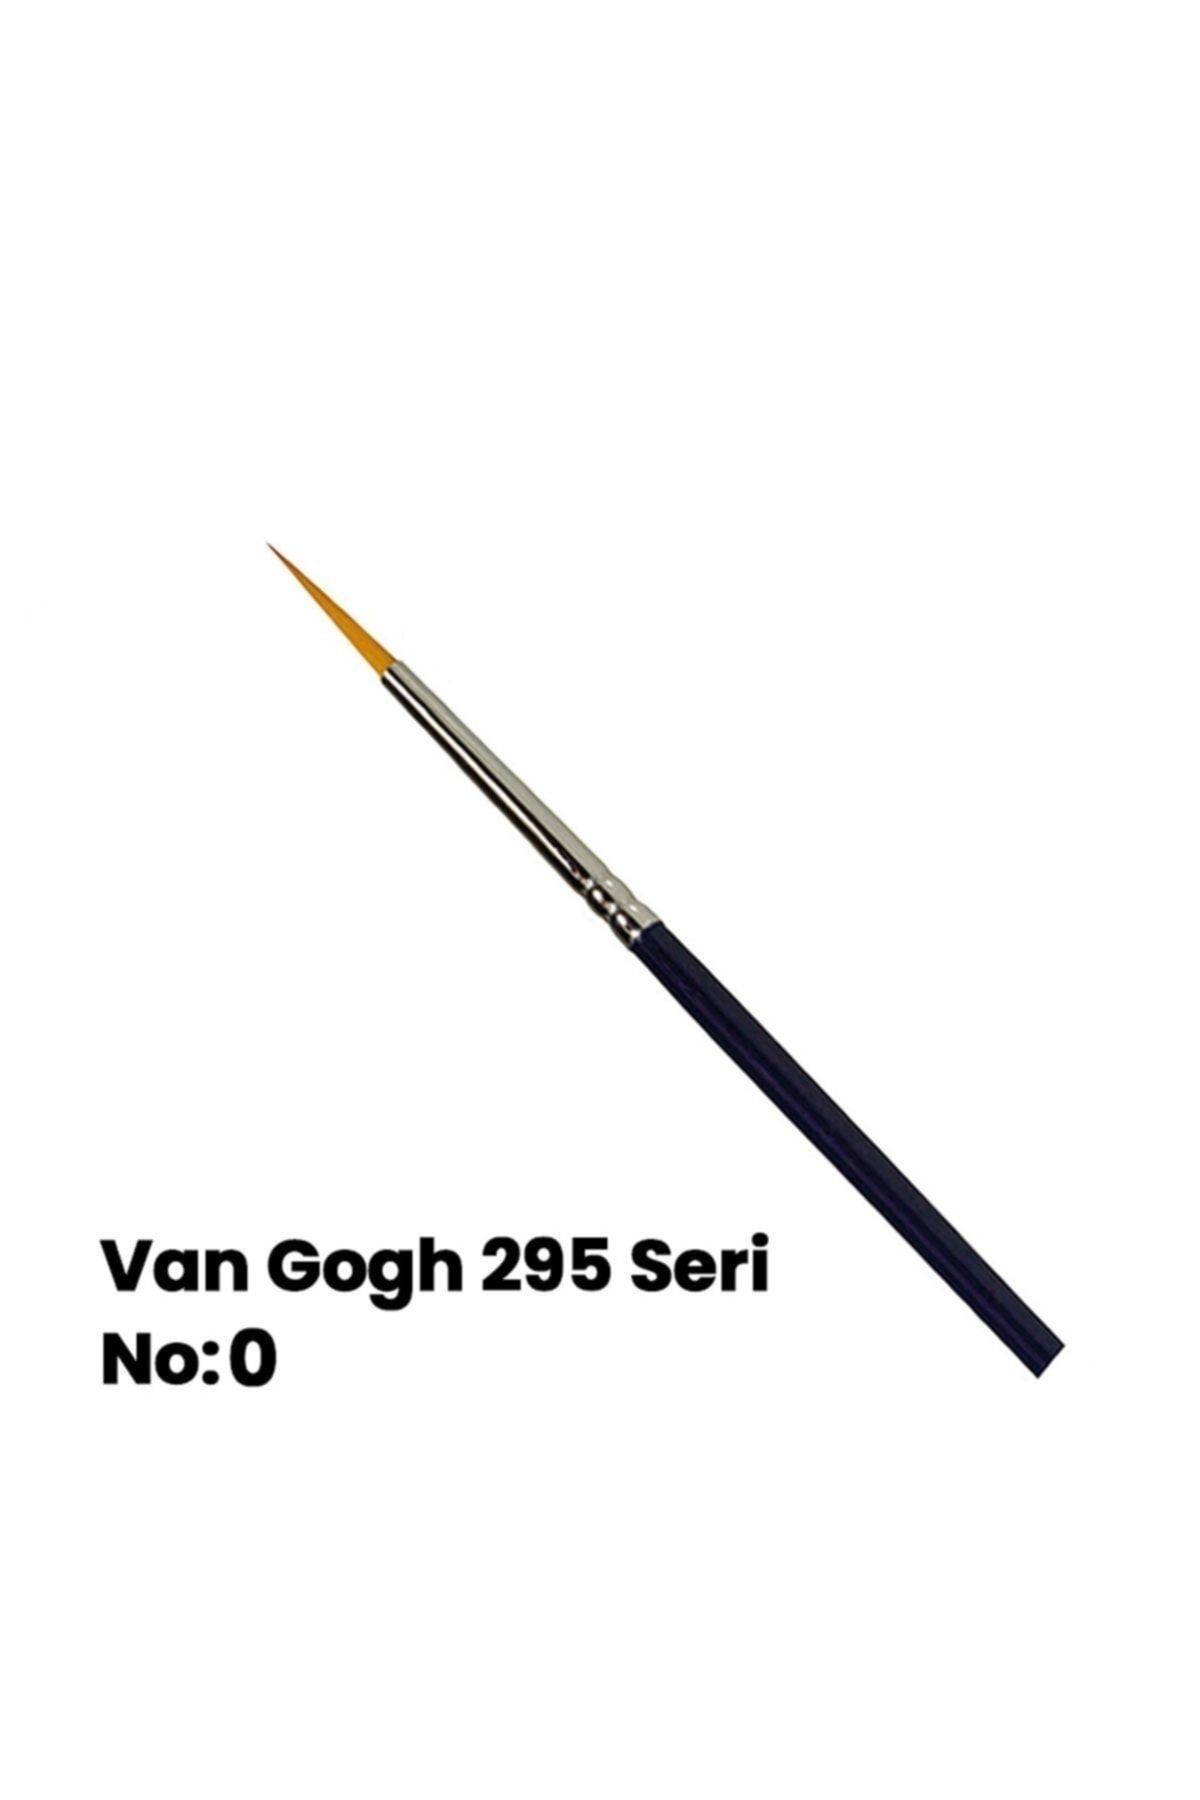 Van Gogh 295 Seri Sentetik Yuvarlak Uçlu Fırça No 0